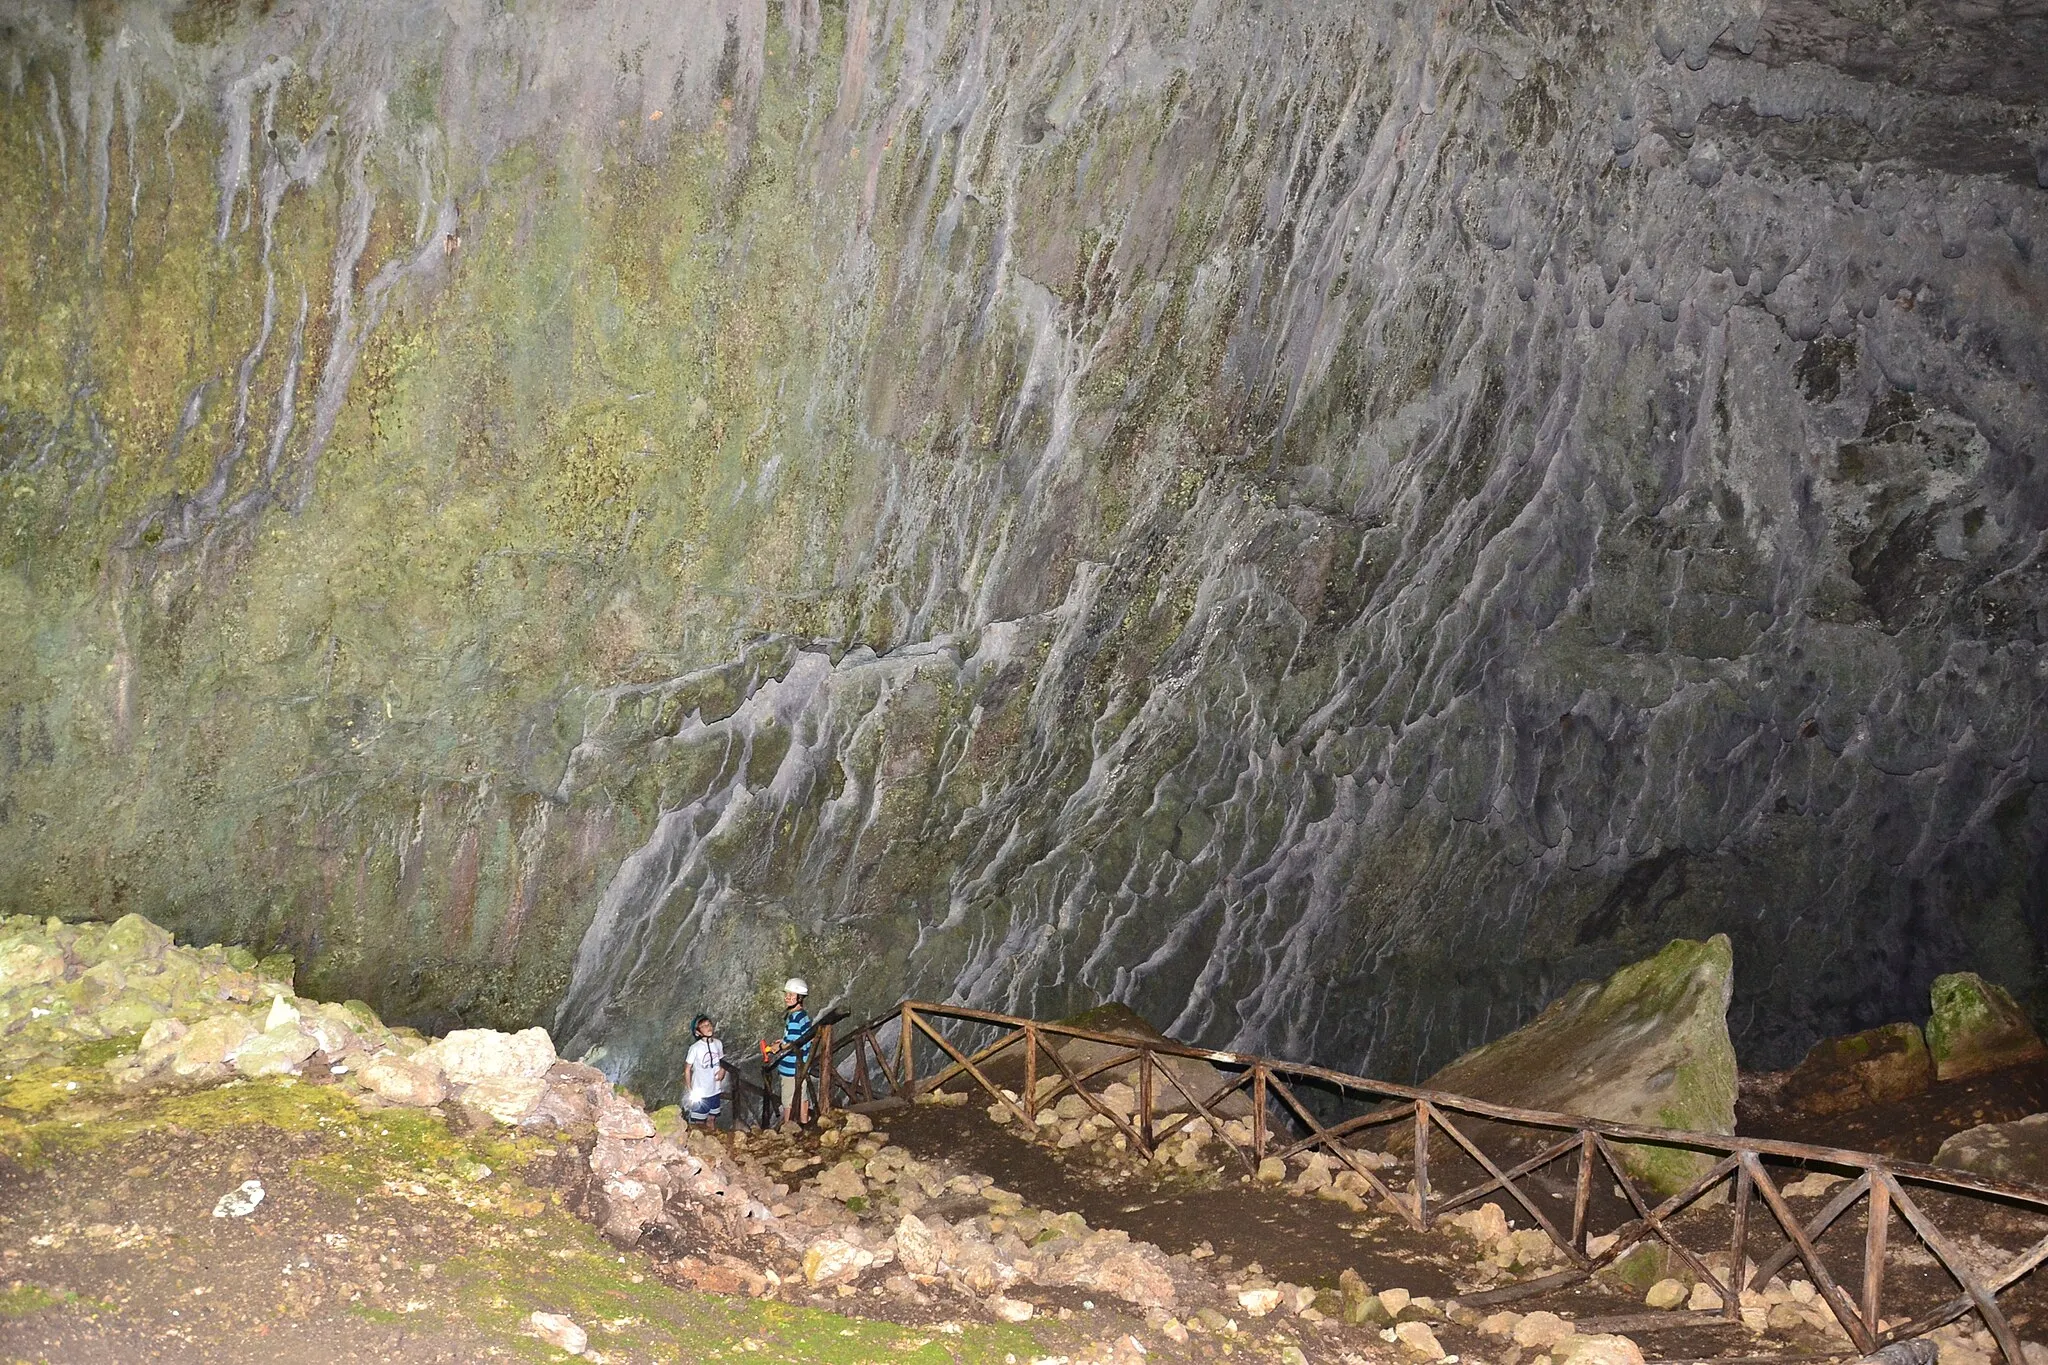 Photo showing: Speläologe "Vale" bei der Besichtigung "Grotta Bella" die etwa 2 km südöstlich des Dorfes Santa Restituta, in der Gemeinde Avigliano Umbro, der Provinz Terni beim Monti Amerini (Monte L'Aiola) liegt. Höhleneingang Richtung Nord-Nordwest. Kalksteinhöhle